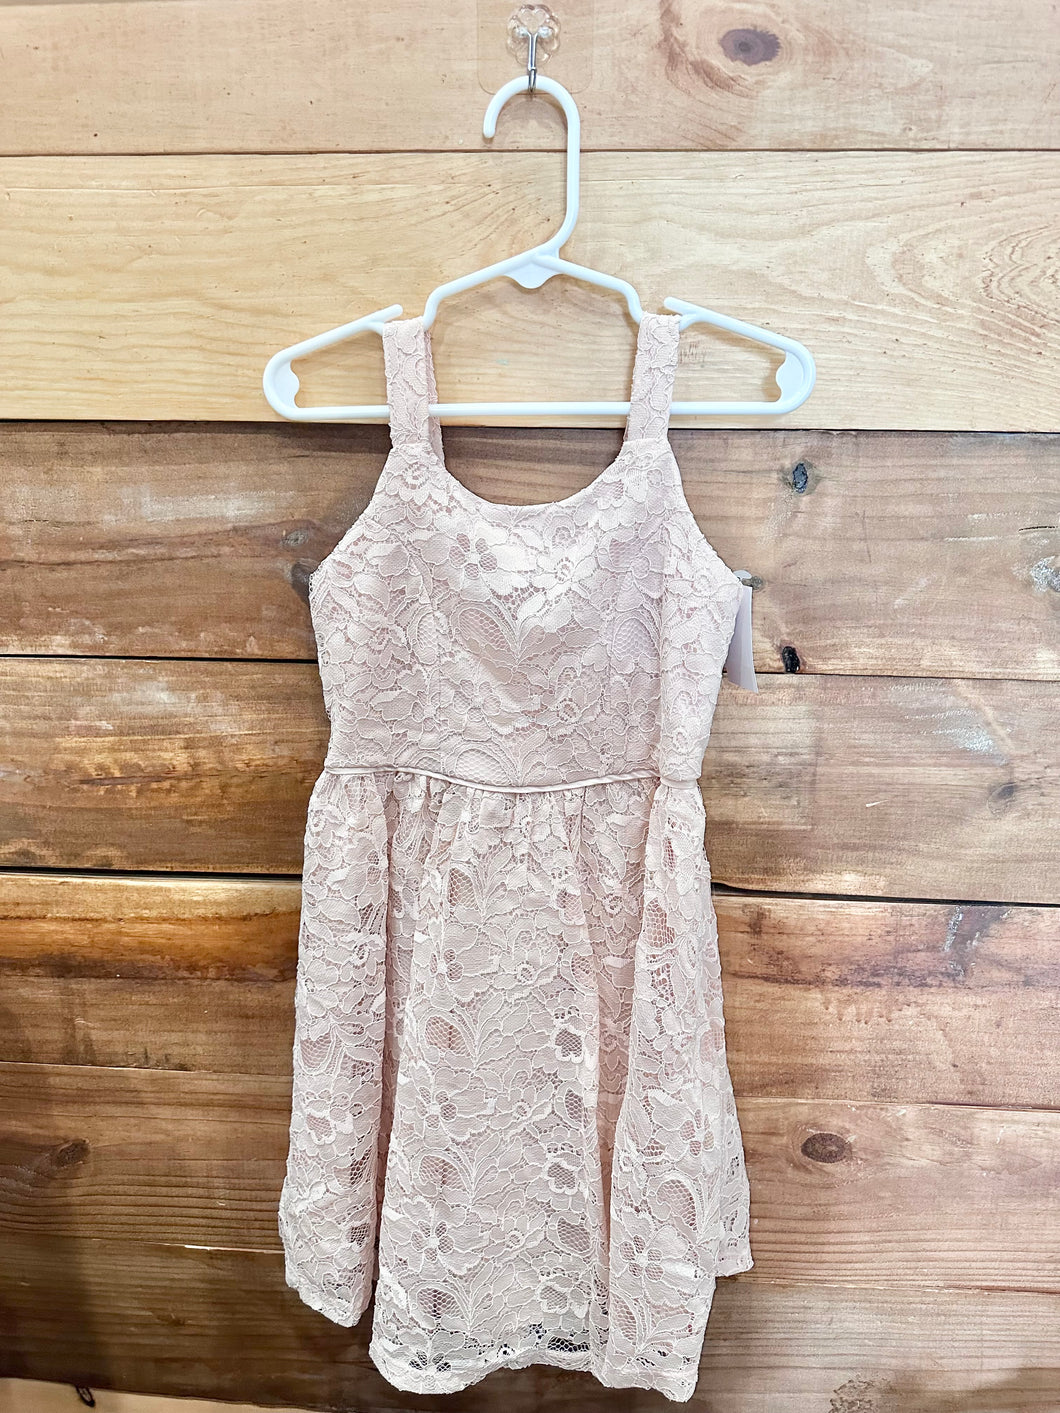 Zenzi Pink Dress Size 4-5